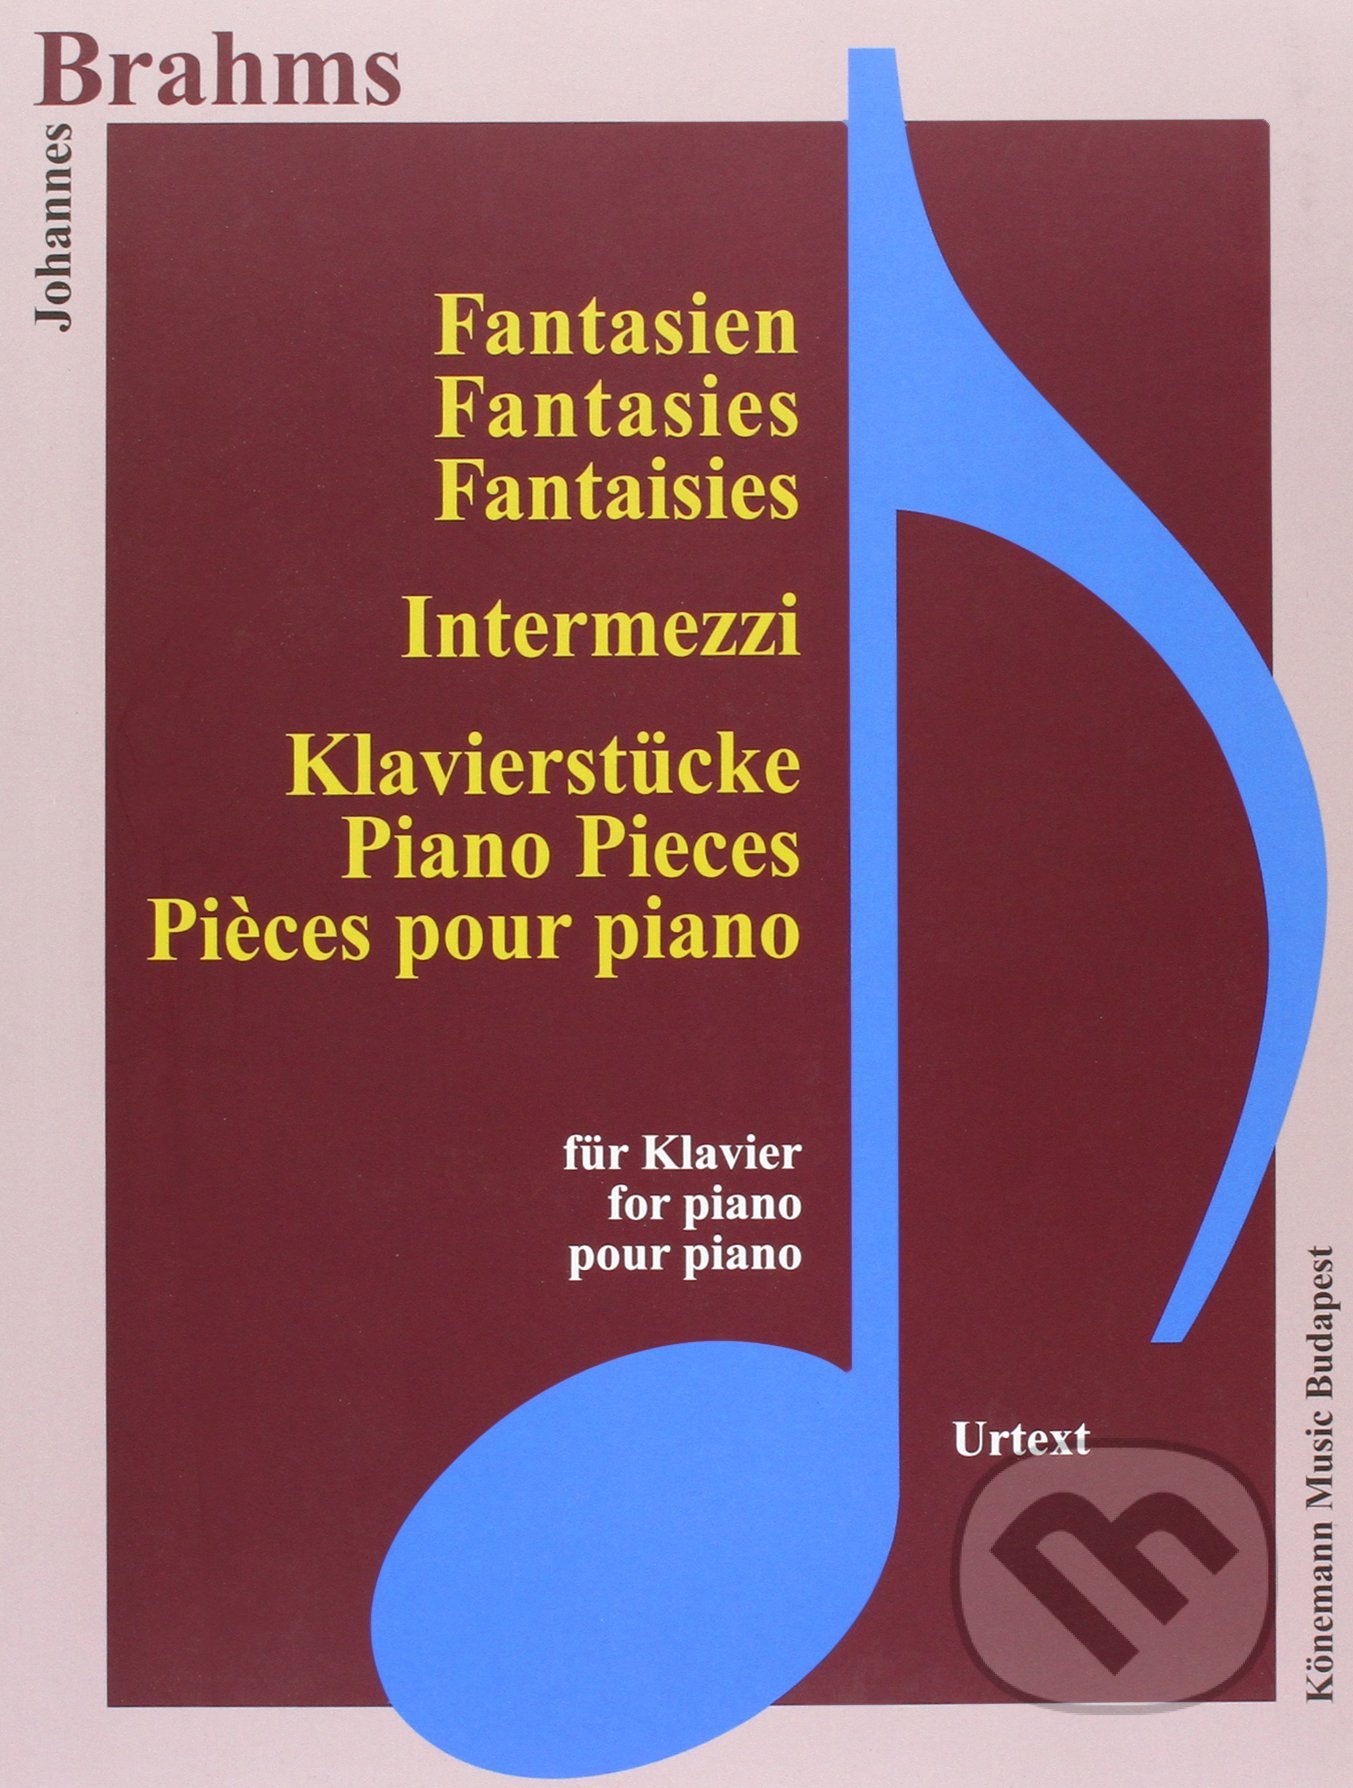 Fantasien, Intermezzi und Klavierstücke - Johannes Brahms, Könemann Music Budapest, 2015